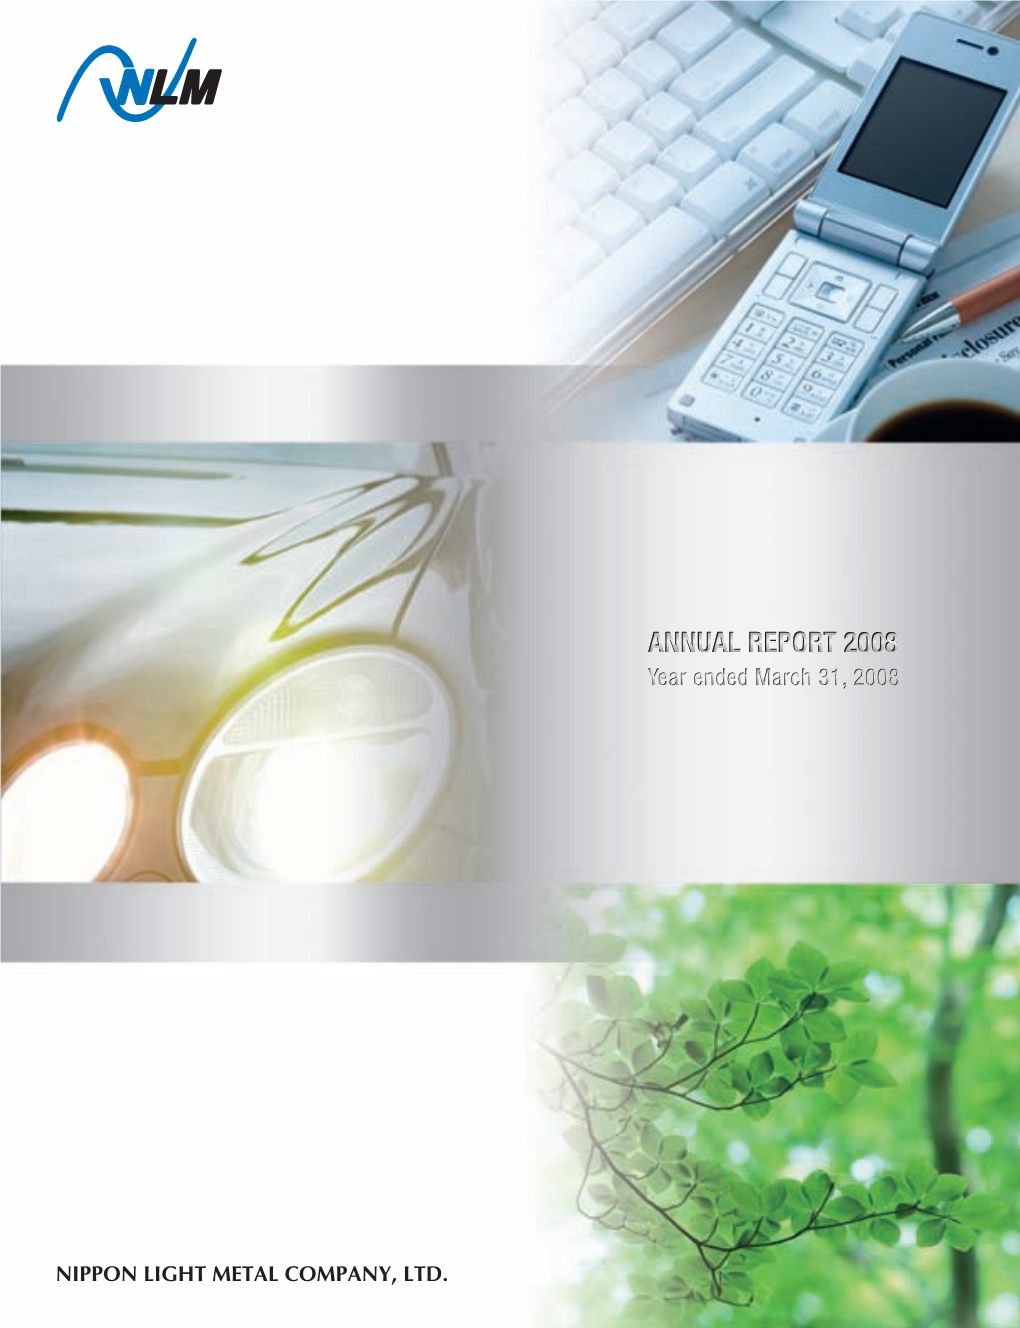 Nippon Light Metal Company, Ltd. Annual Report 2008